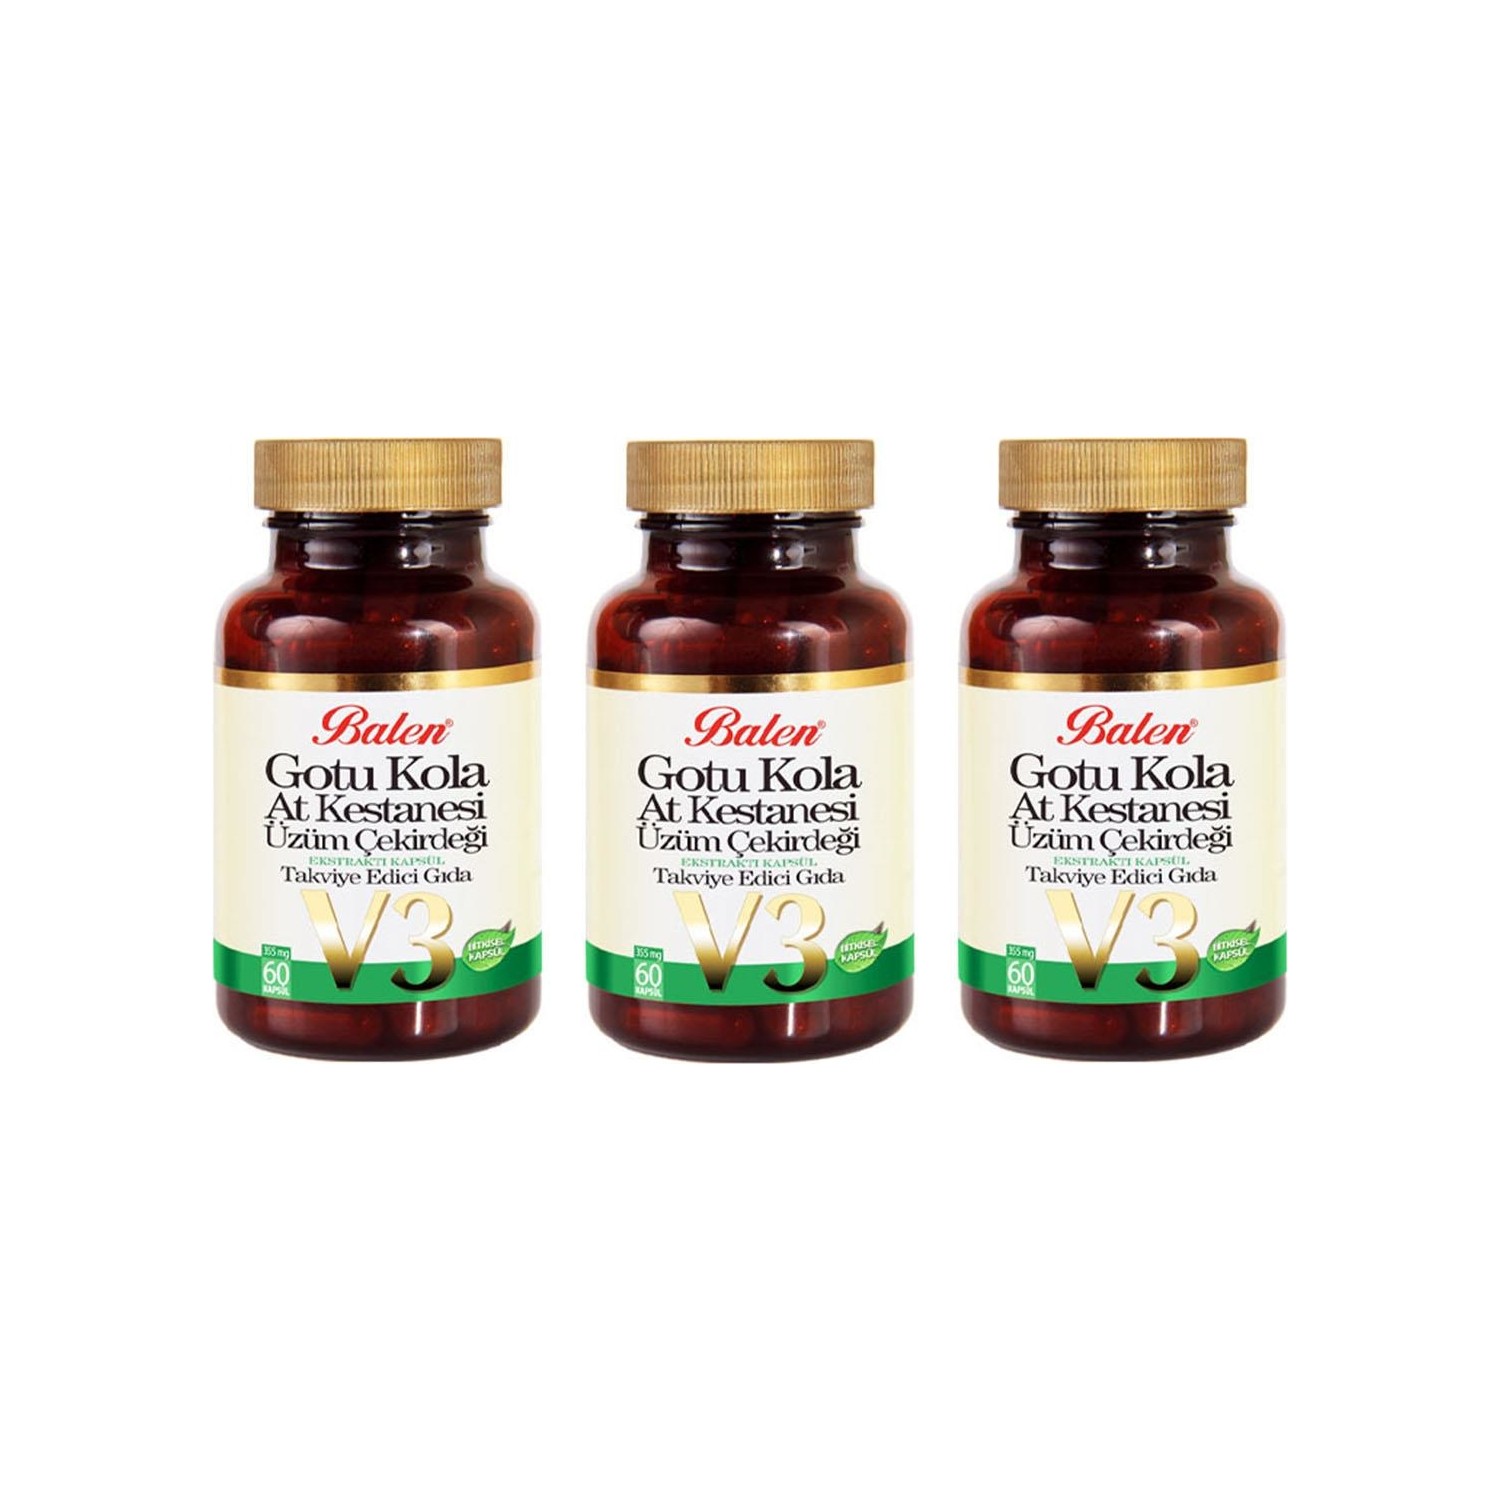 Активная добавка Balen Gotu Kola-Horse Chestnut-Grape Seed, 60 капсул, 3 штуки swanson экстракт виноградных косточек стандартизированный 500 мг 60 капсул